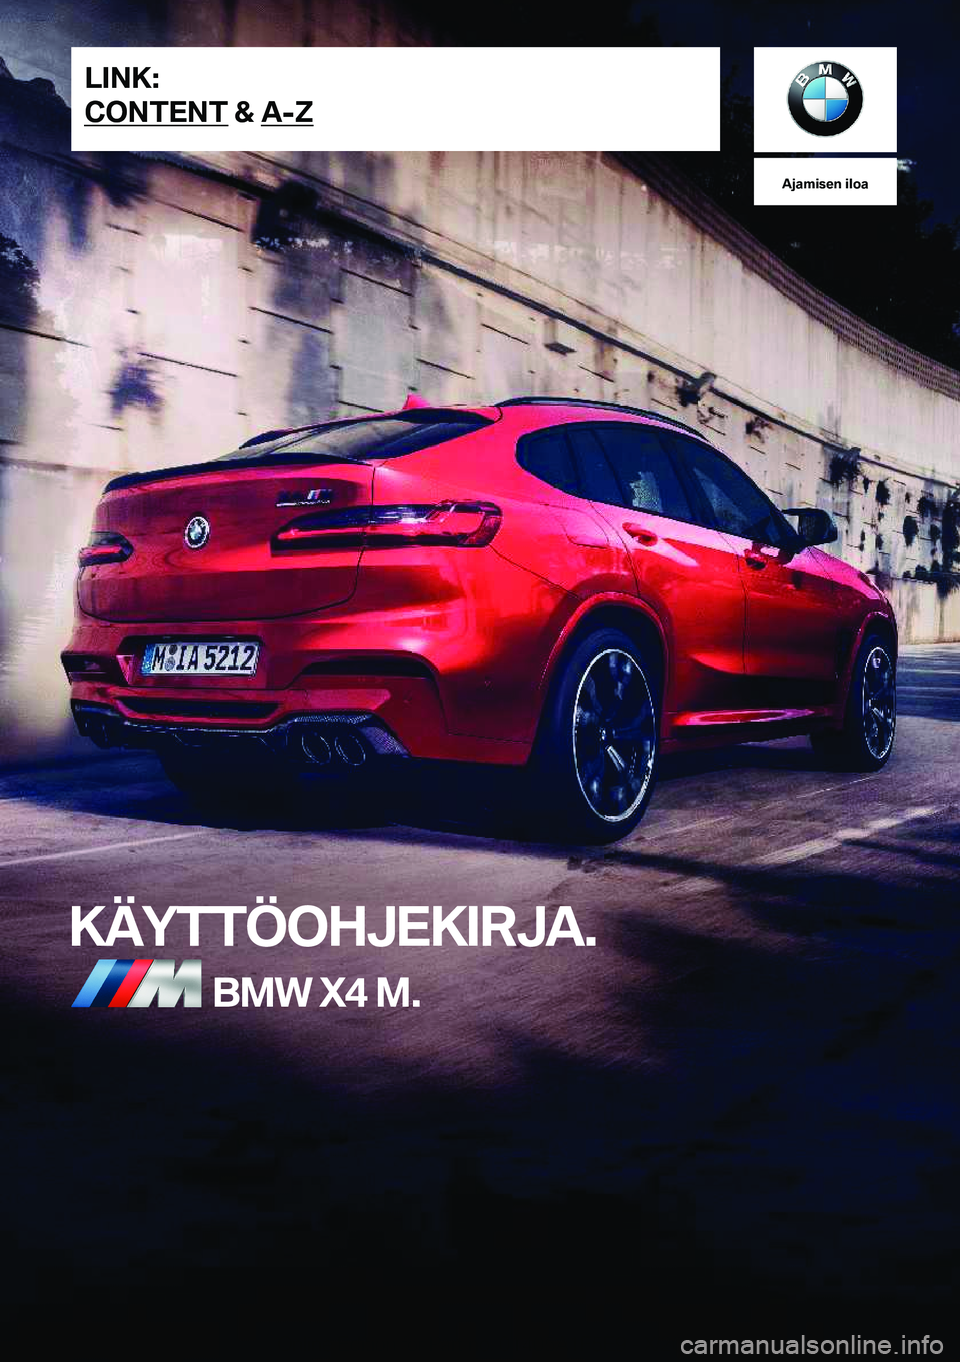 BMW X4 M 2021  Omistajan Käsikirja (in Finnish) �A�j�a�m�i�s�e�n��i�l�o�a
�K�